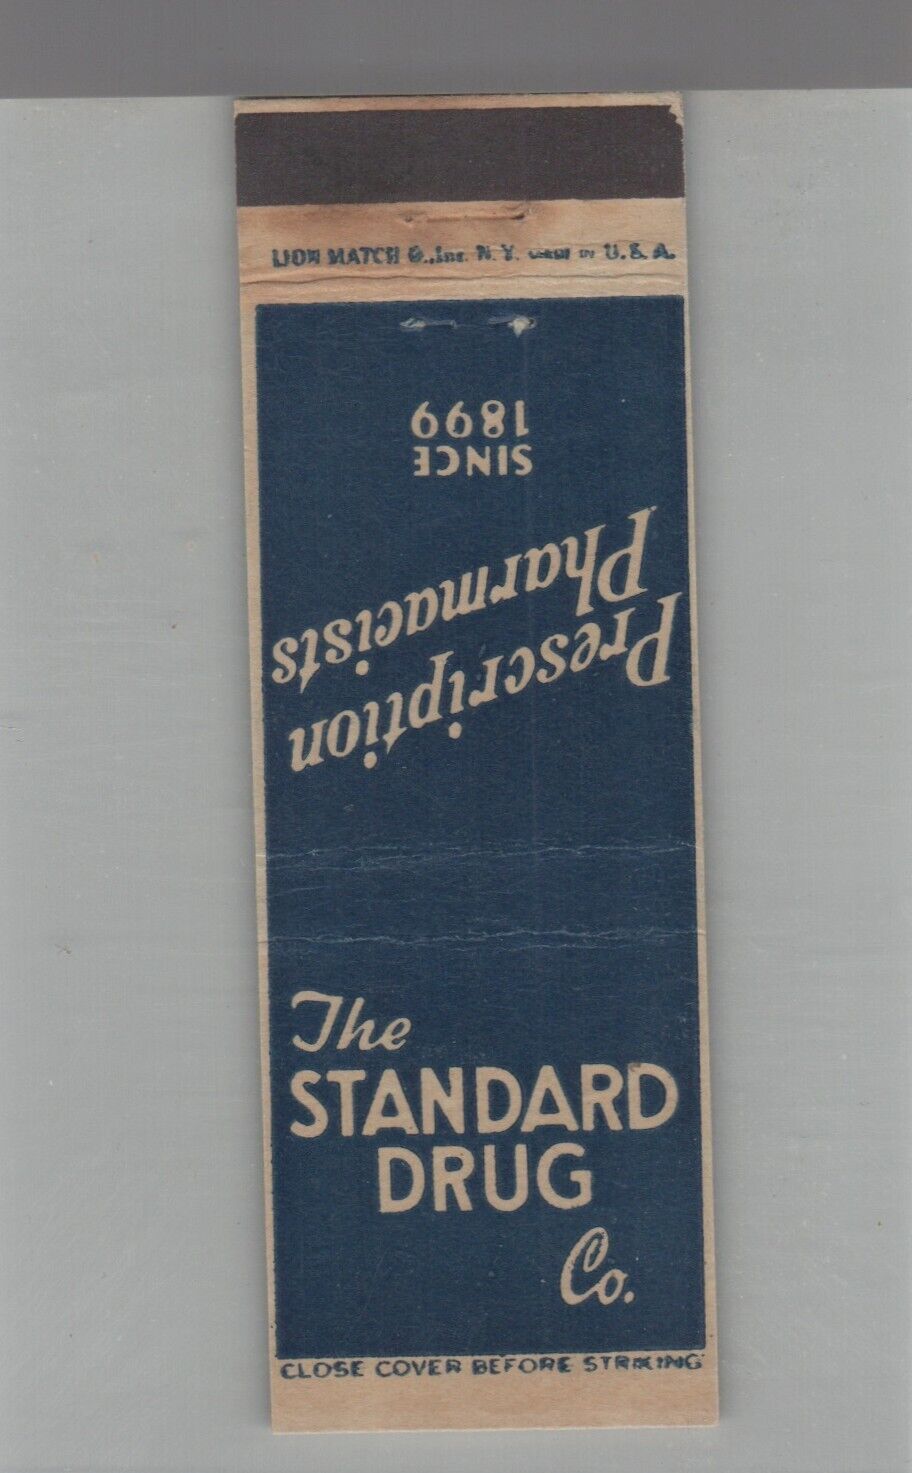 Matchbook Cover - The Standard Drug Co.